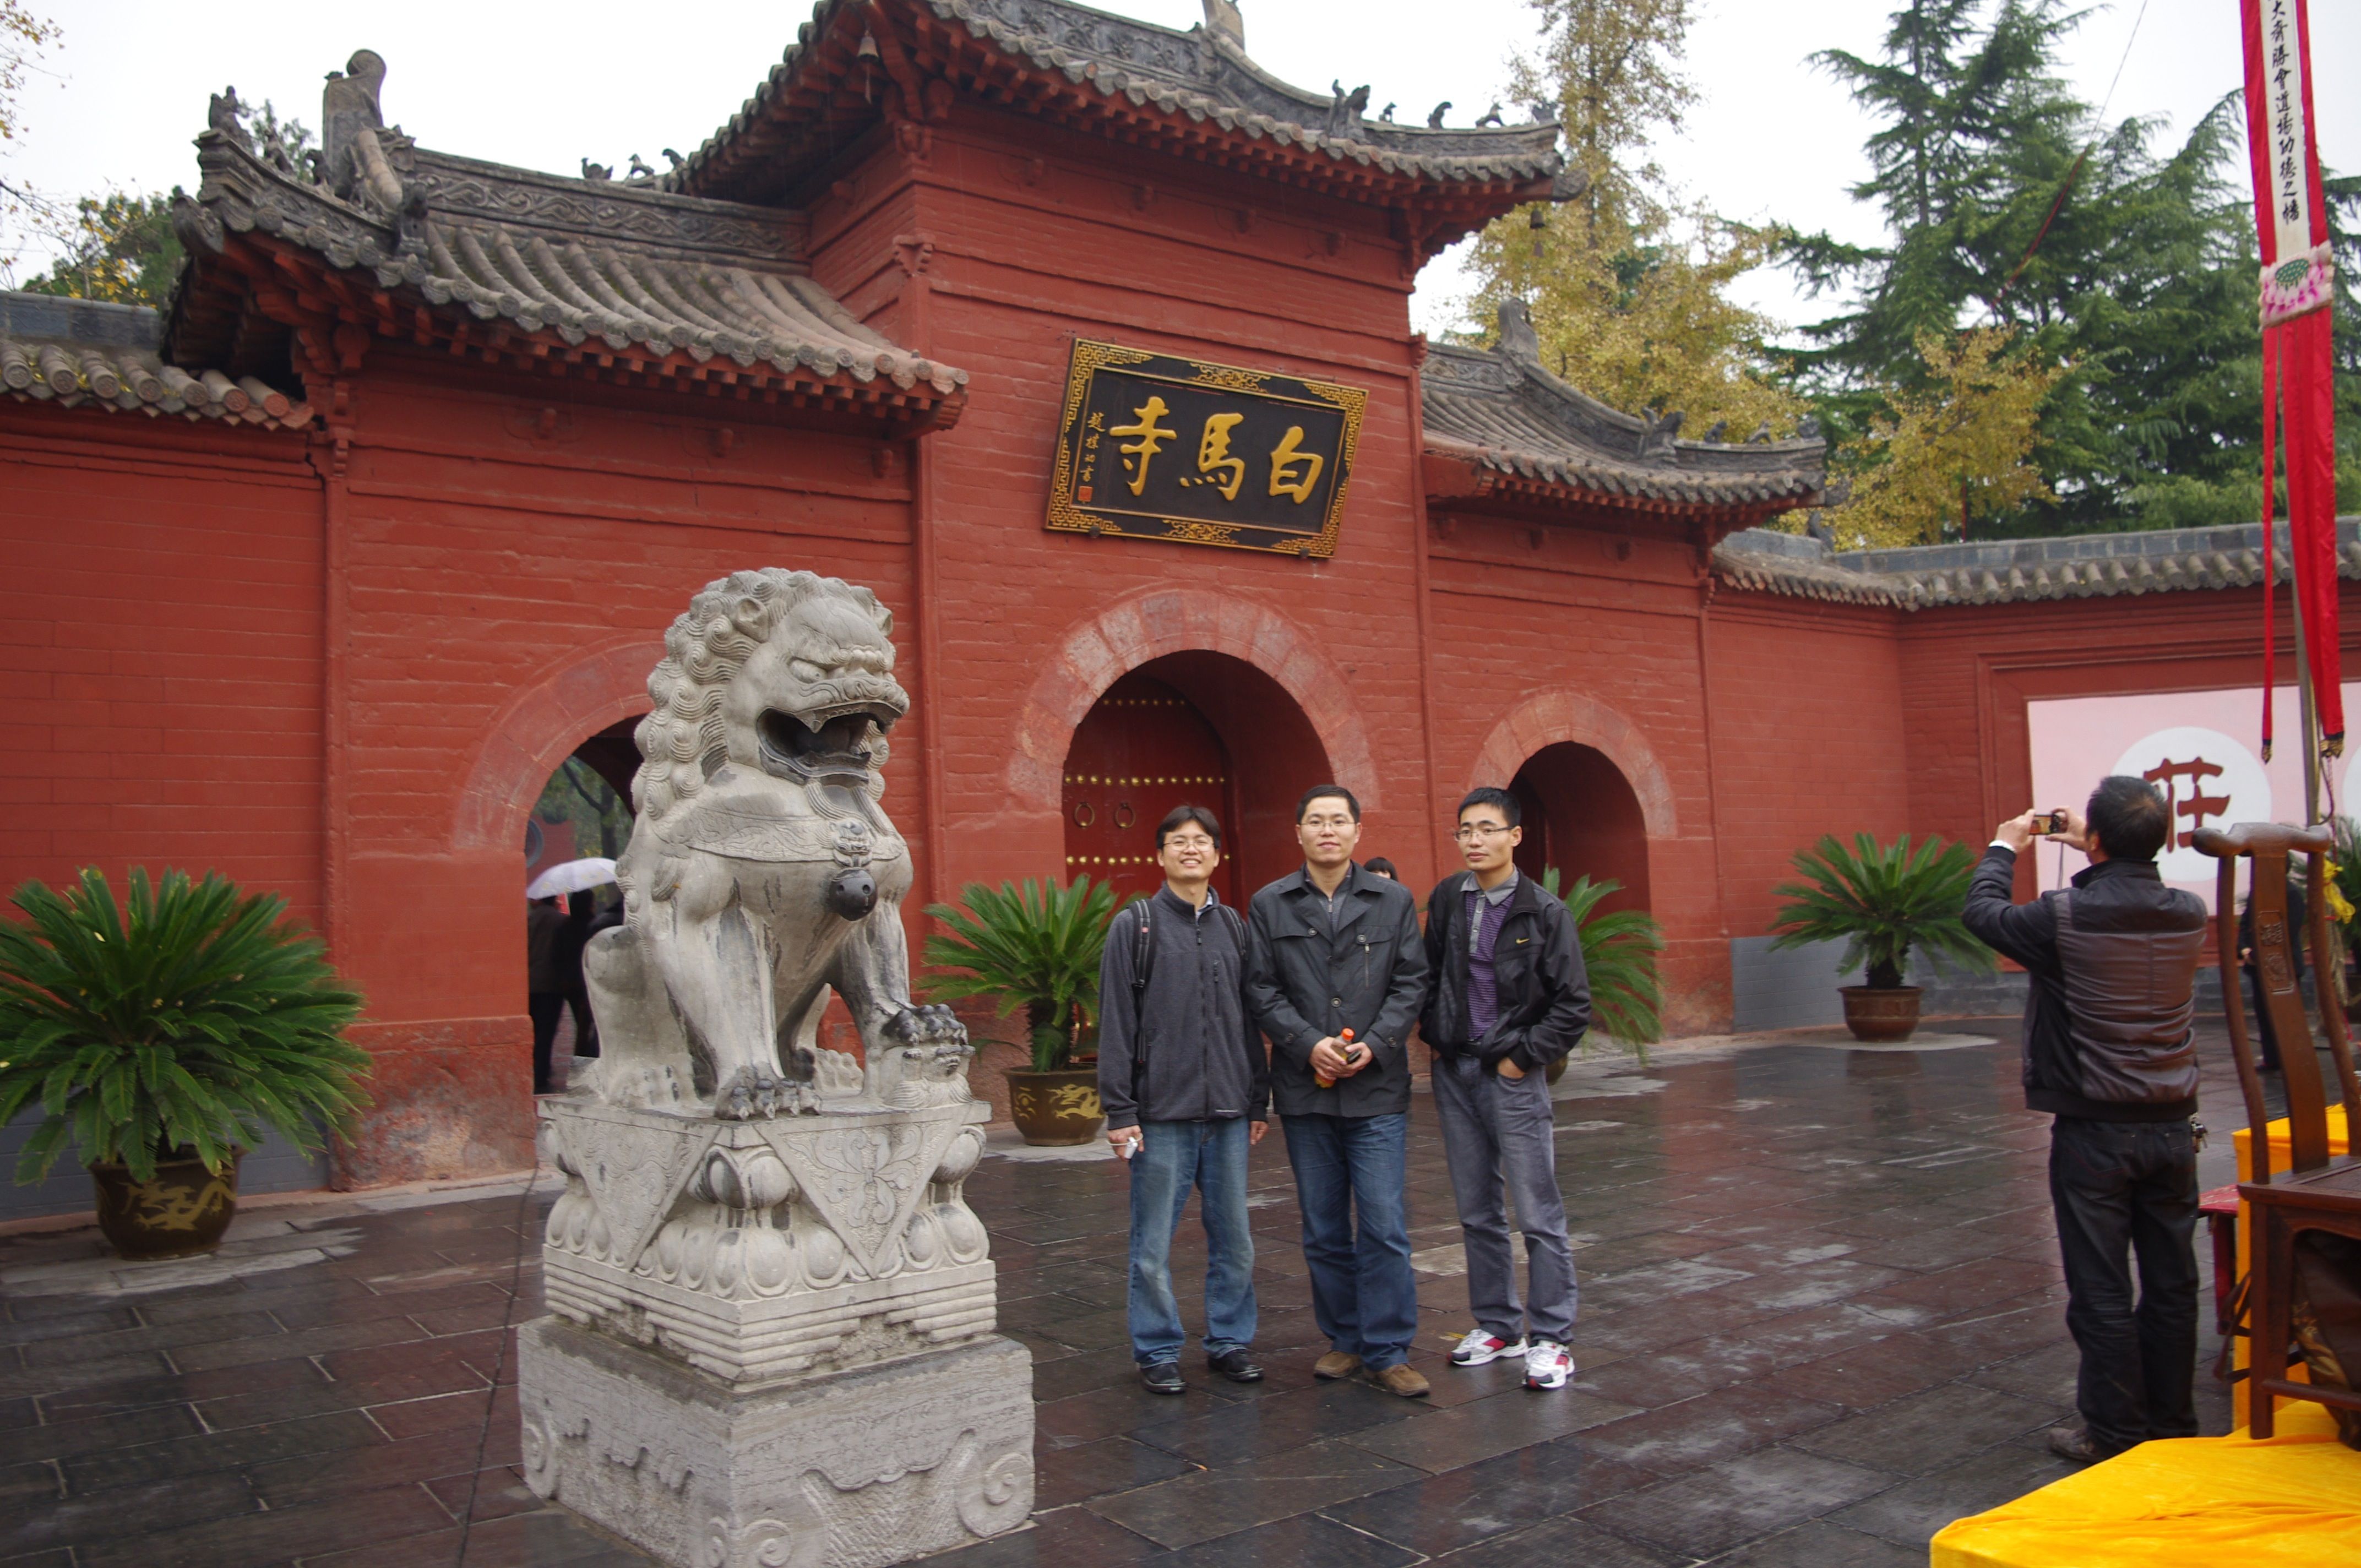 Luoyang, China - 1719